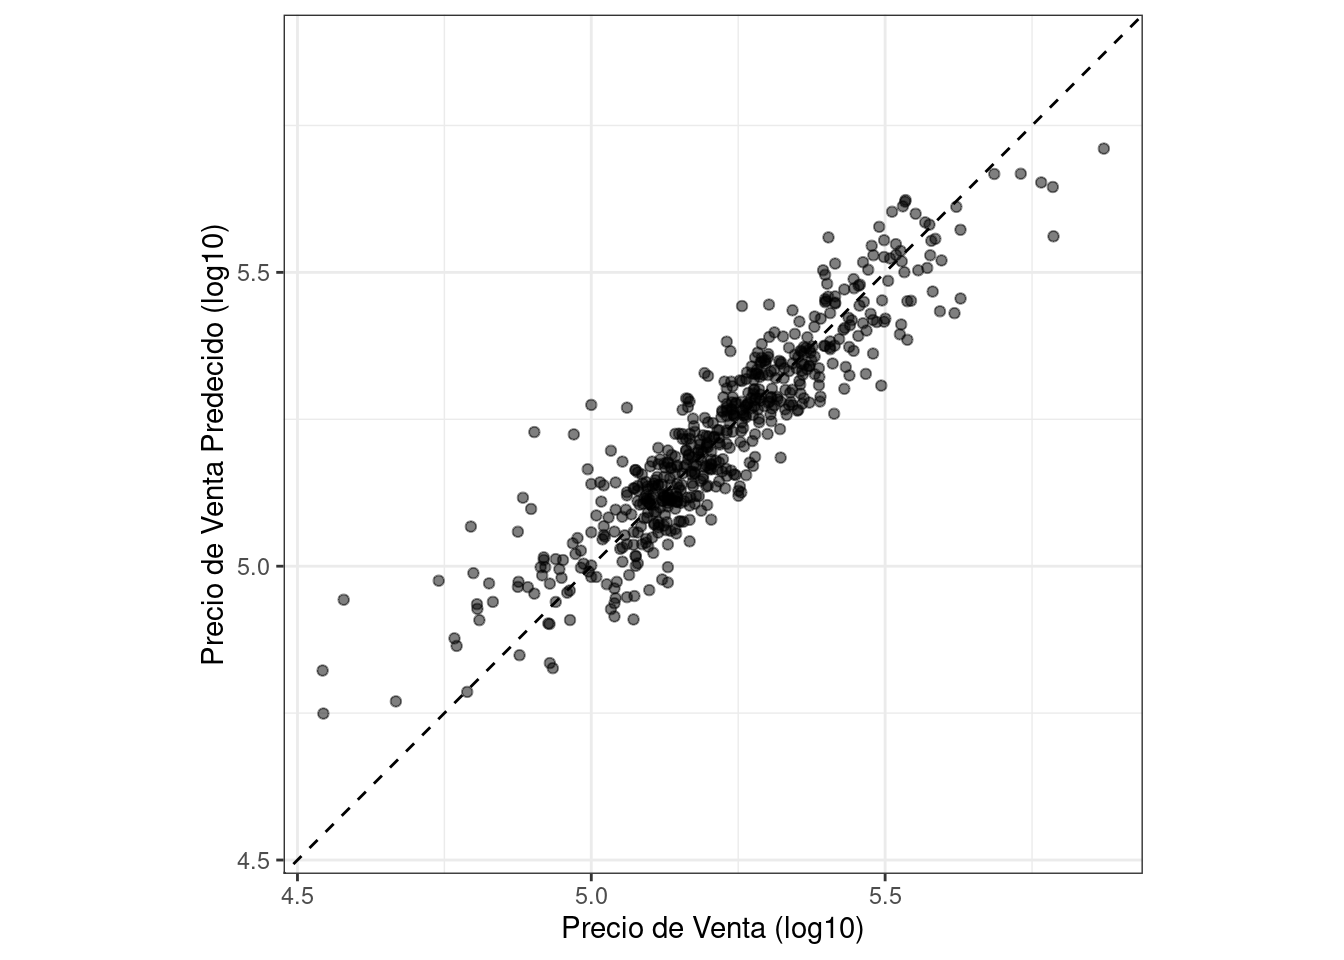 Gráficos de dispersión de valores numéricos observados versus valores predichos para un modelo de regresión de Ames. Ambos ejes utilizan unidades log-10. El modelo muestra una buena concordancia con algunos puntos que no se ajustan bien a precios altos y bajos.